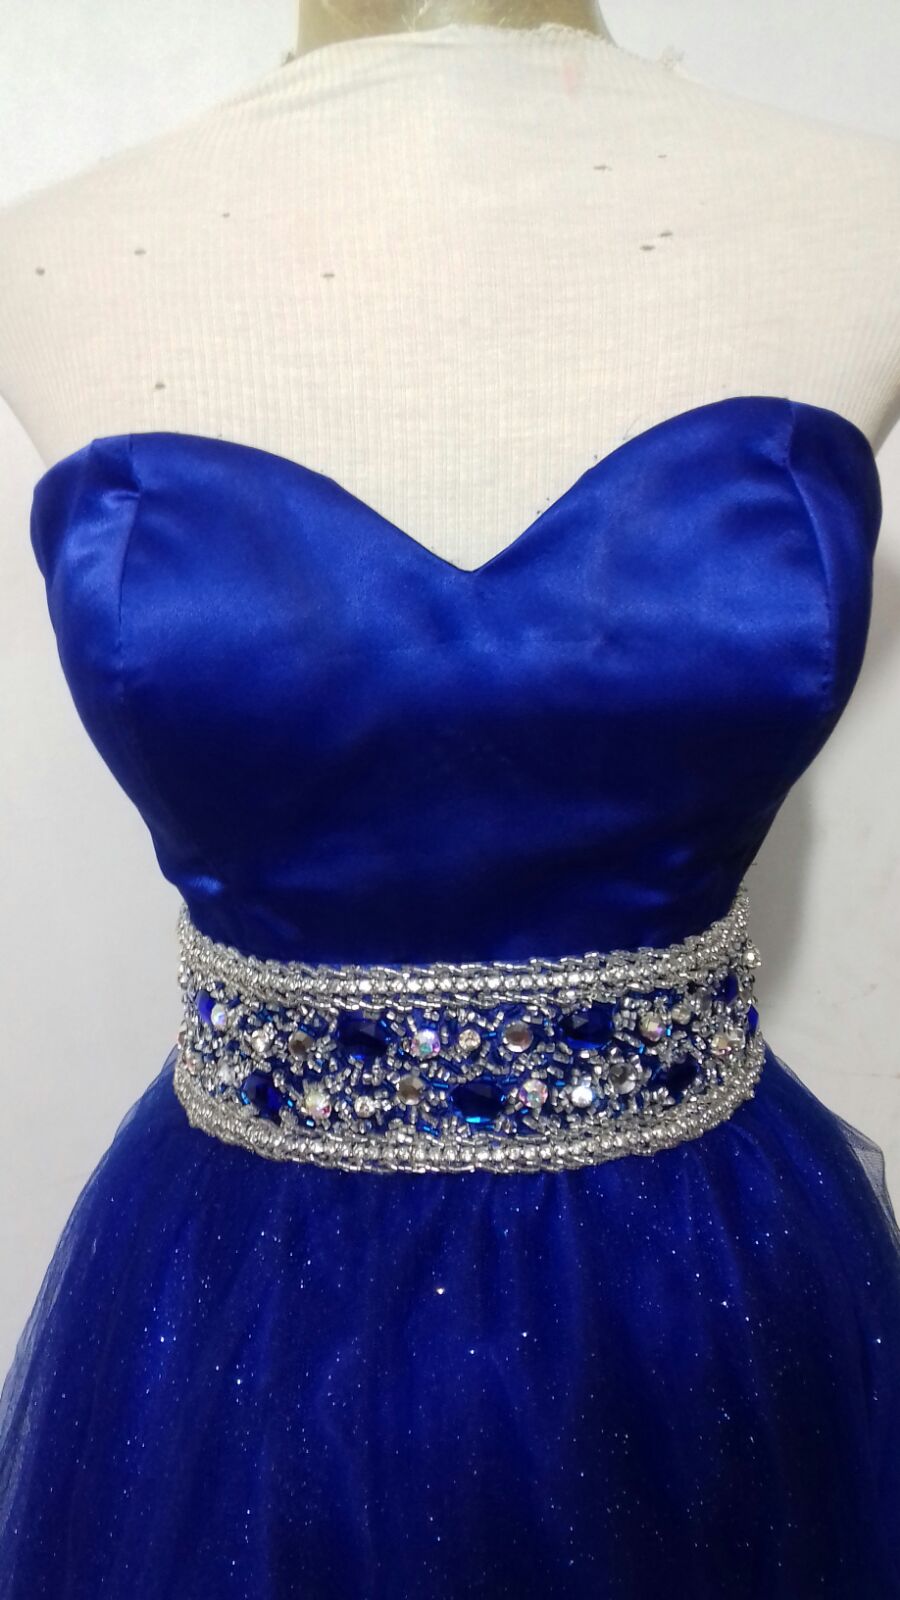 vestido azul com prata